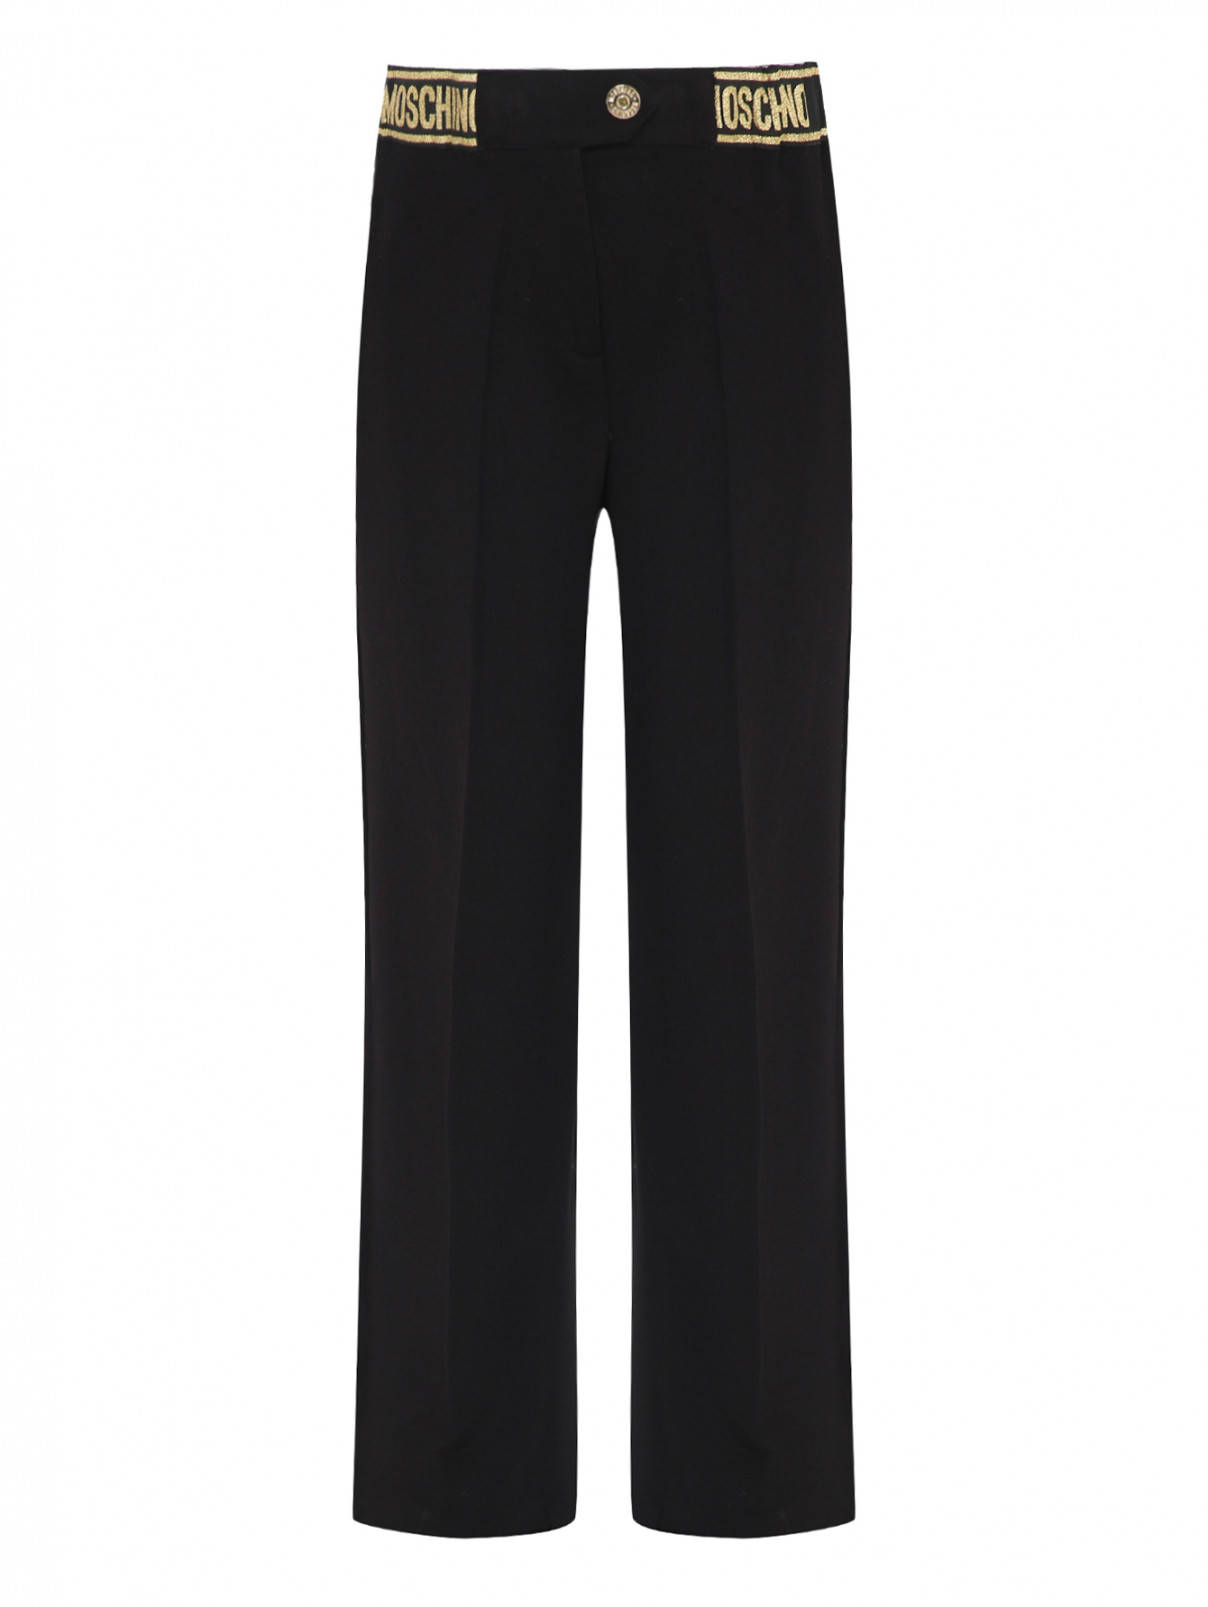 Трикотажные брюки со стрелками Moschino Kid  –  Общий вид  – Цвет:  Черный